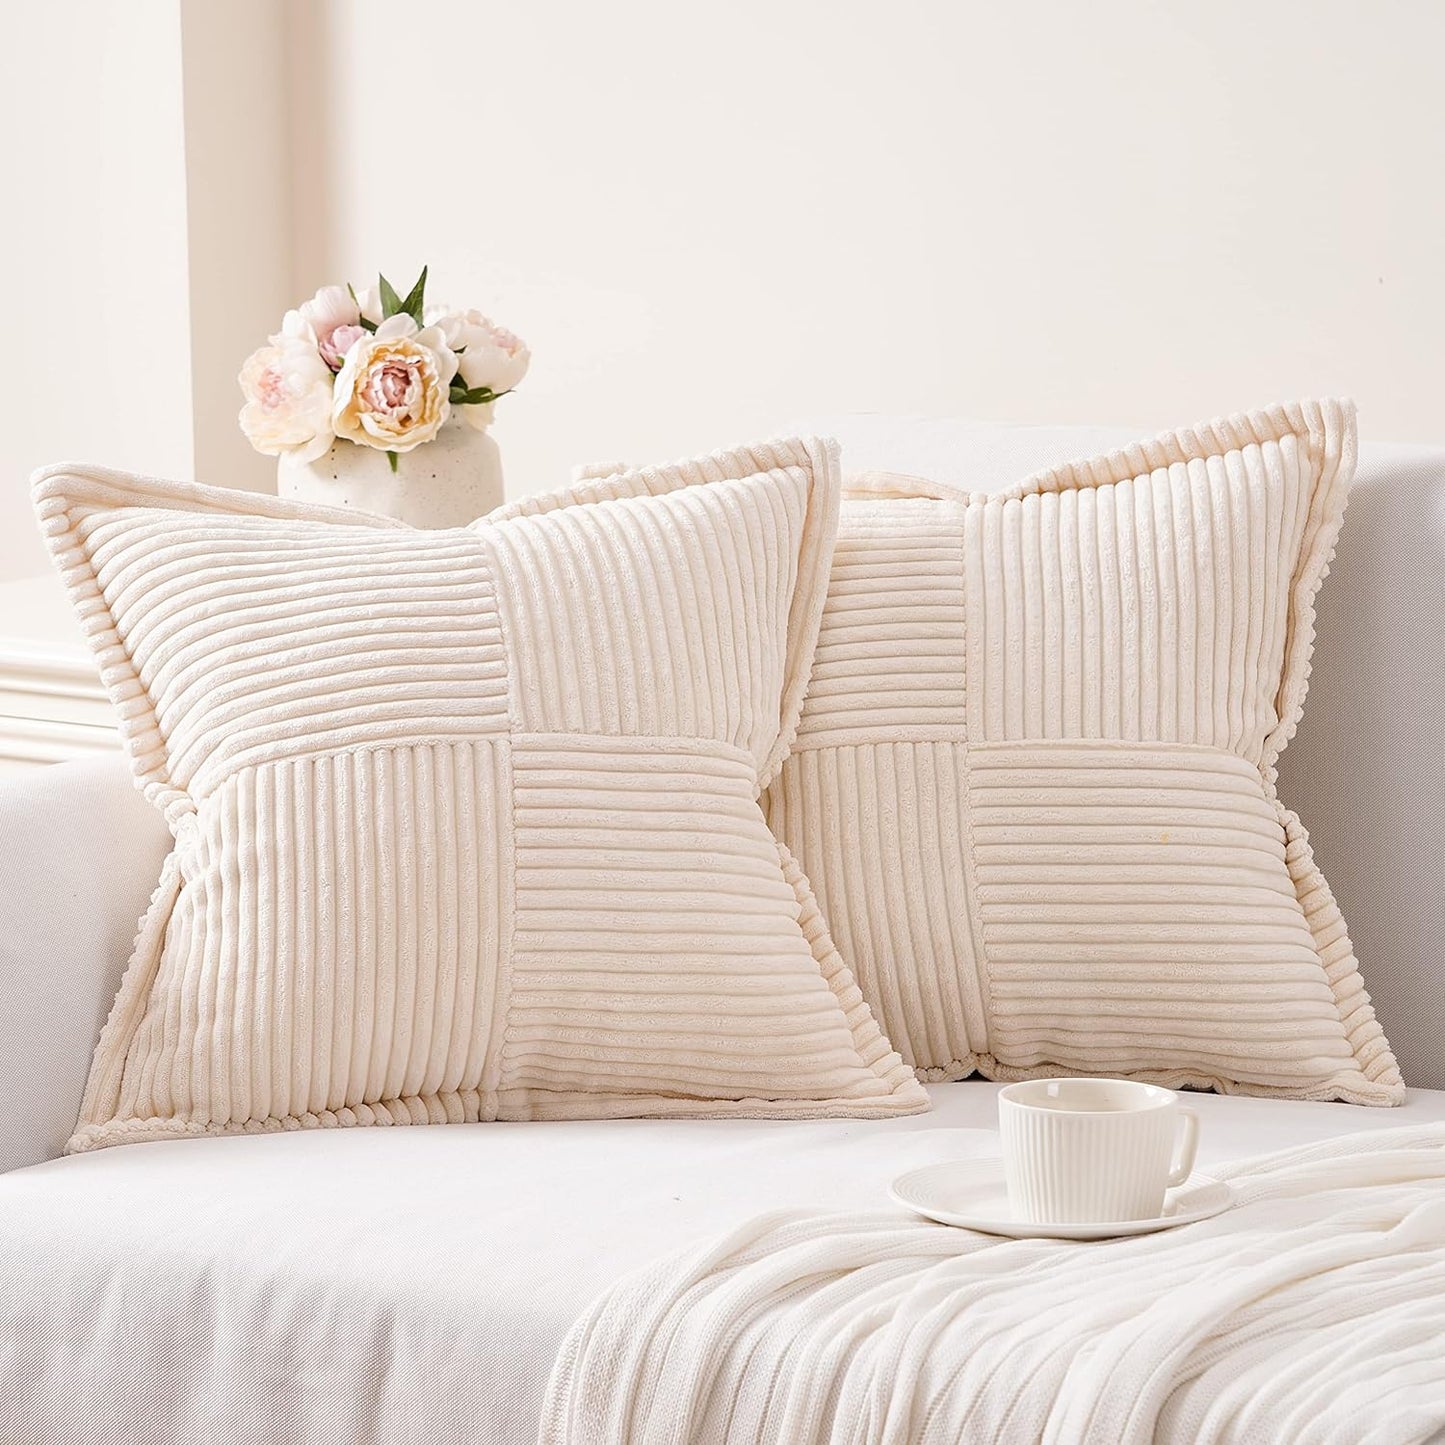 Corduroy Striped Throw Pillow Covers | Boho Style